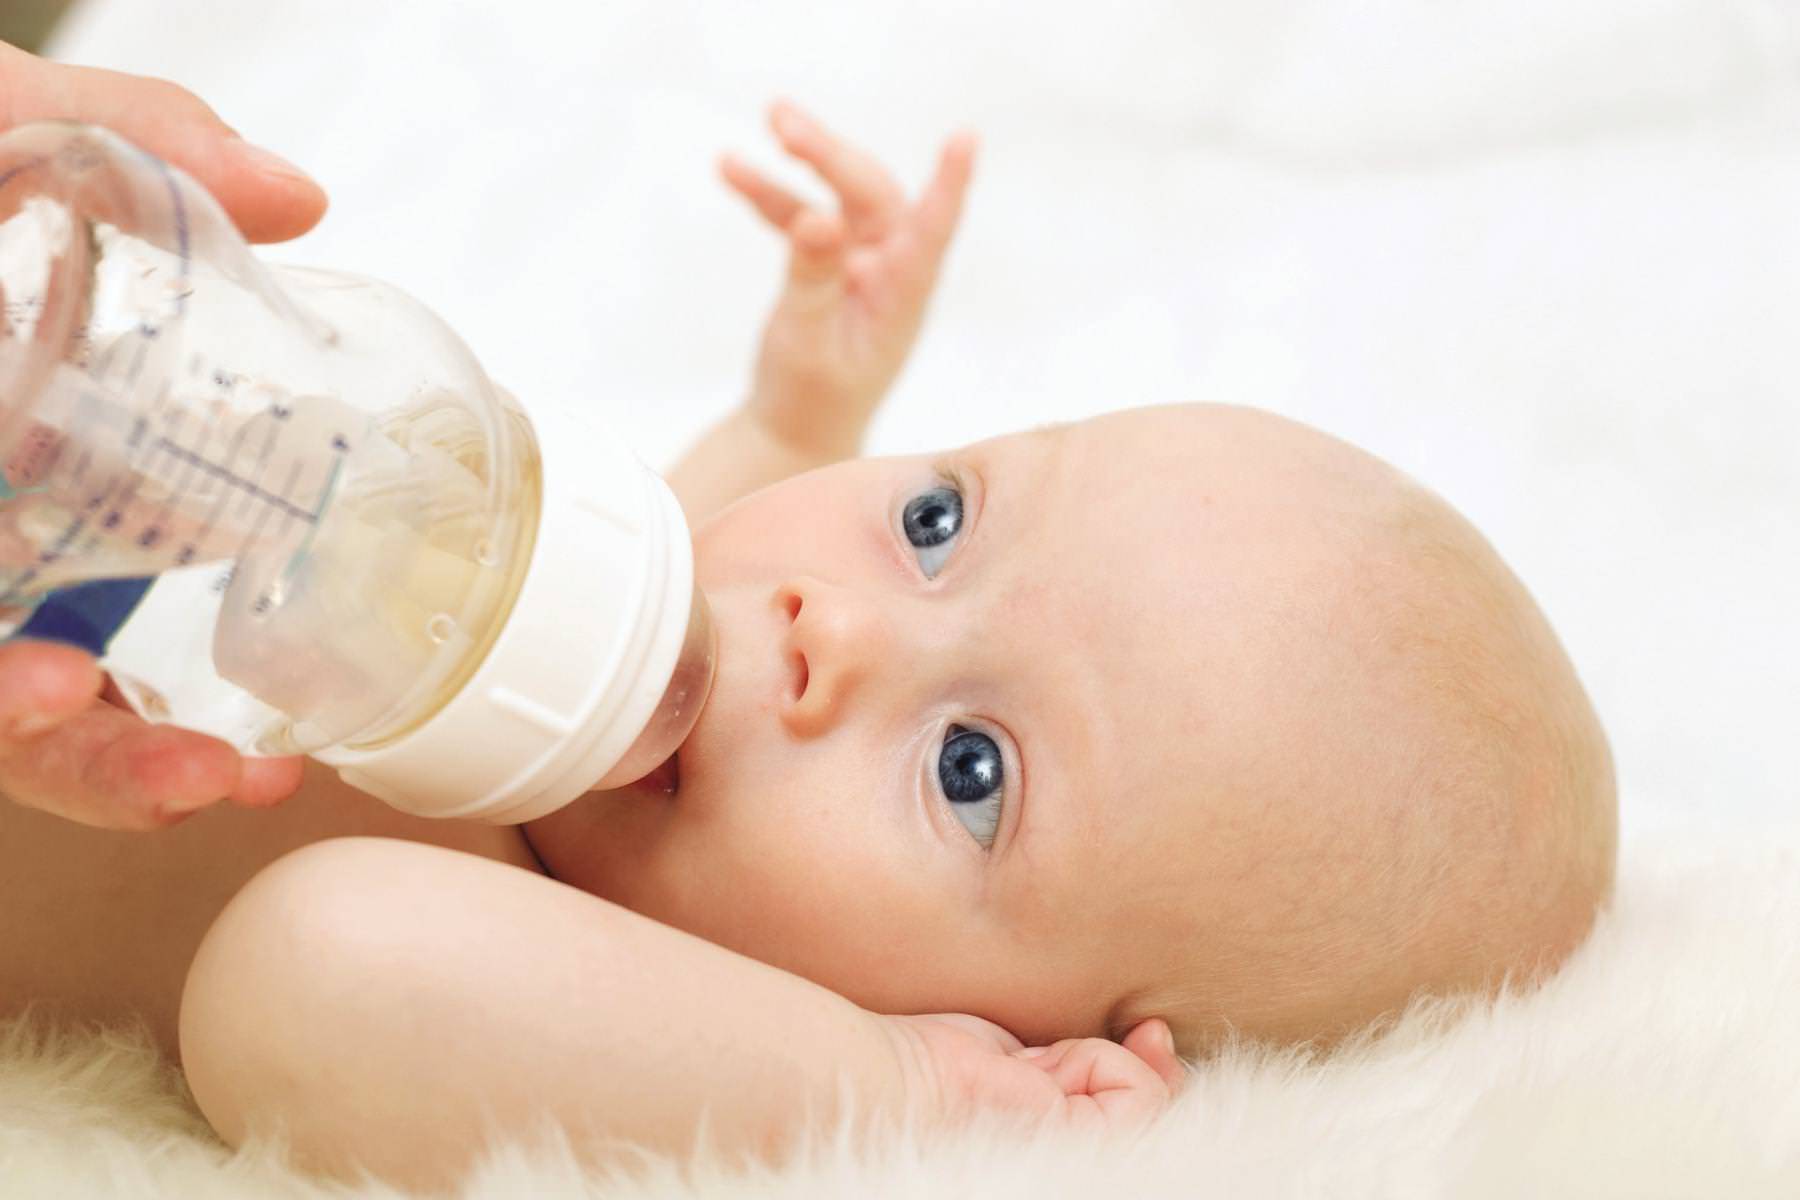 Нужно ли давать воду при грудном вскармливании новорожденному: когда можно